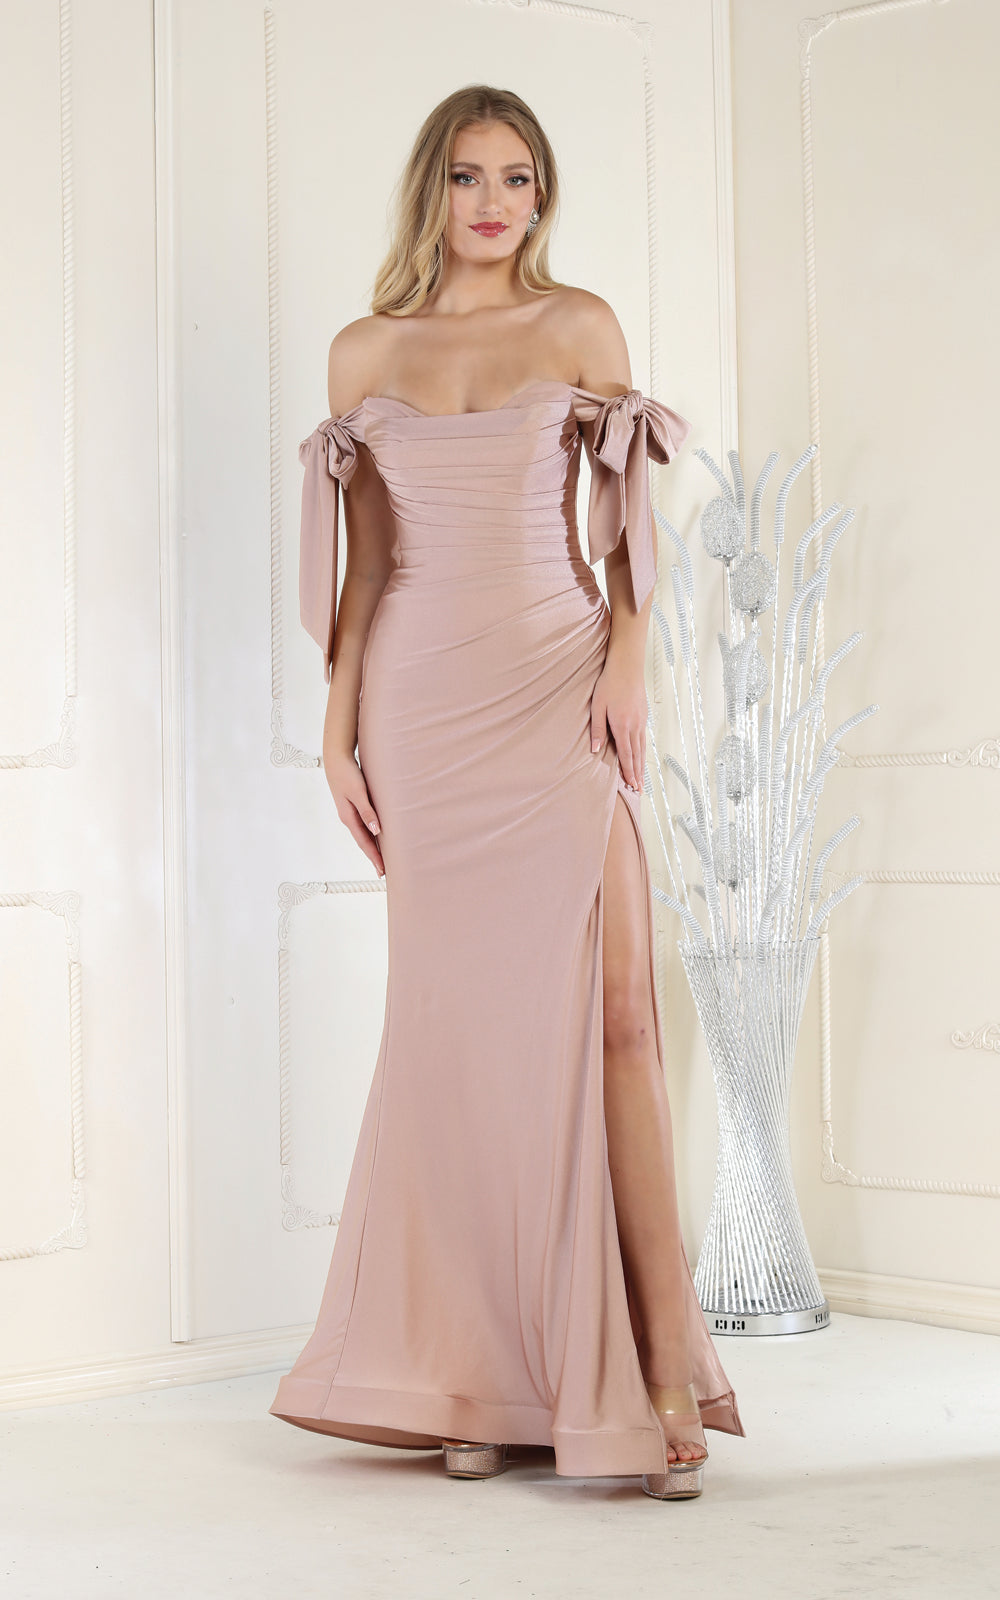 Sexy Off The Shoulder Evening Gown - LA1858 - Mauve - LA Merchandise